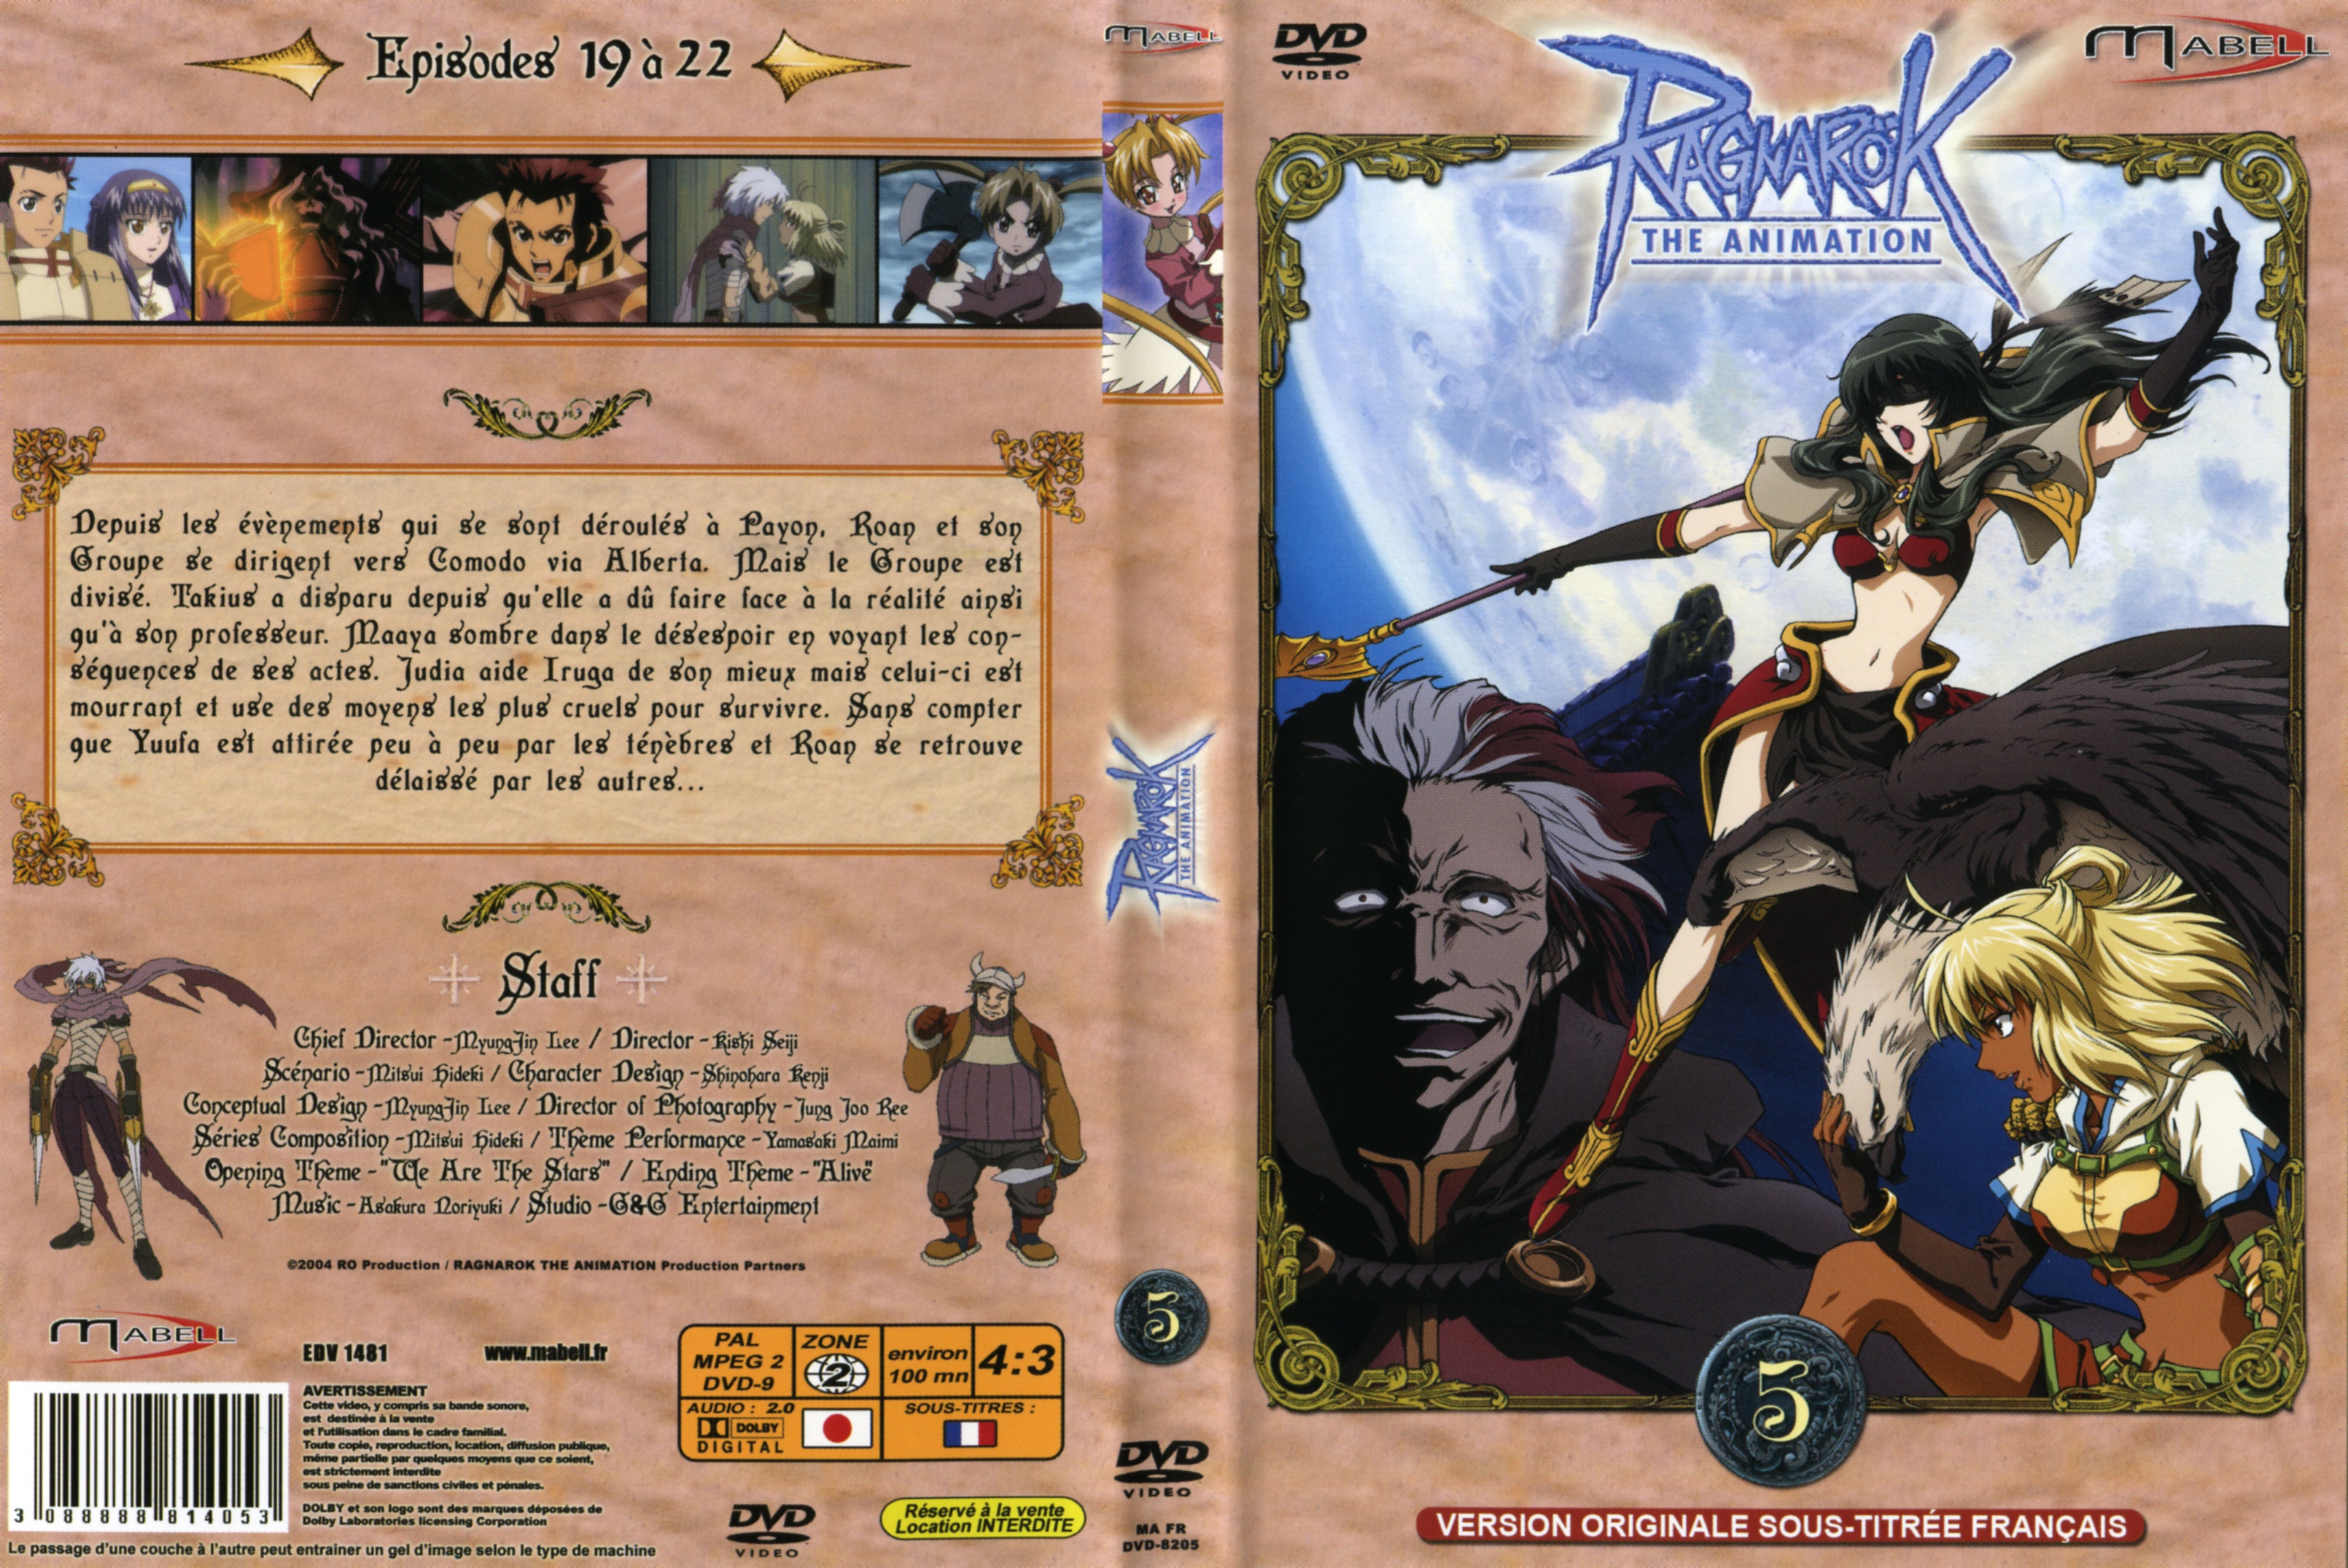 Jaquette DVD Ragnarok vol 5